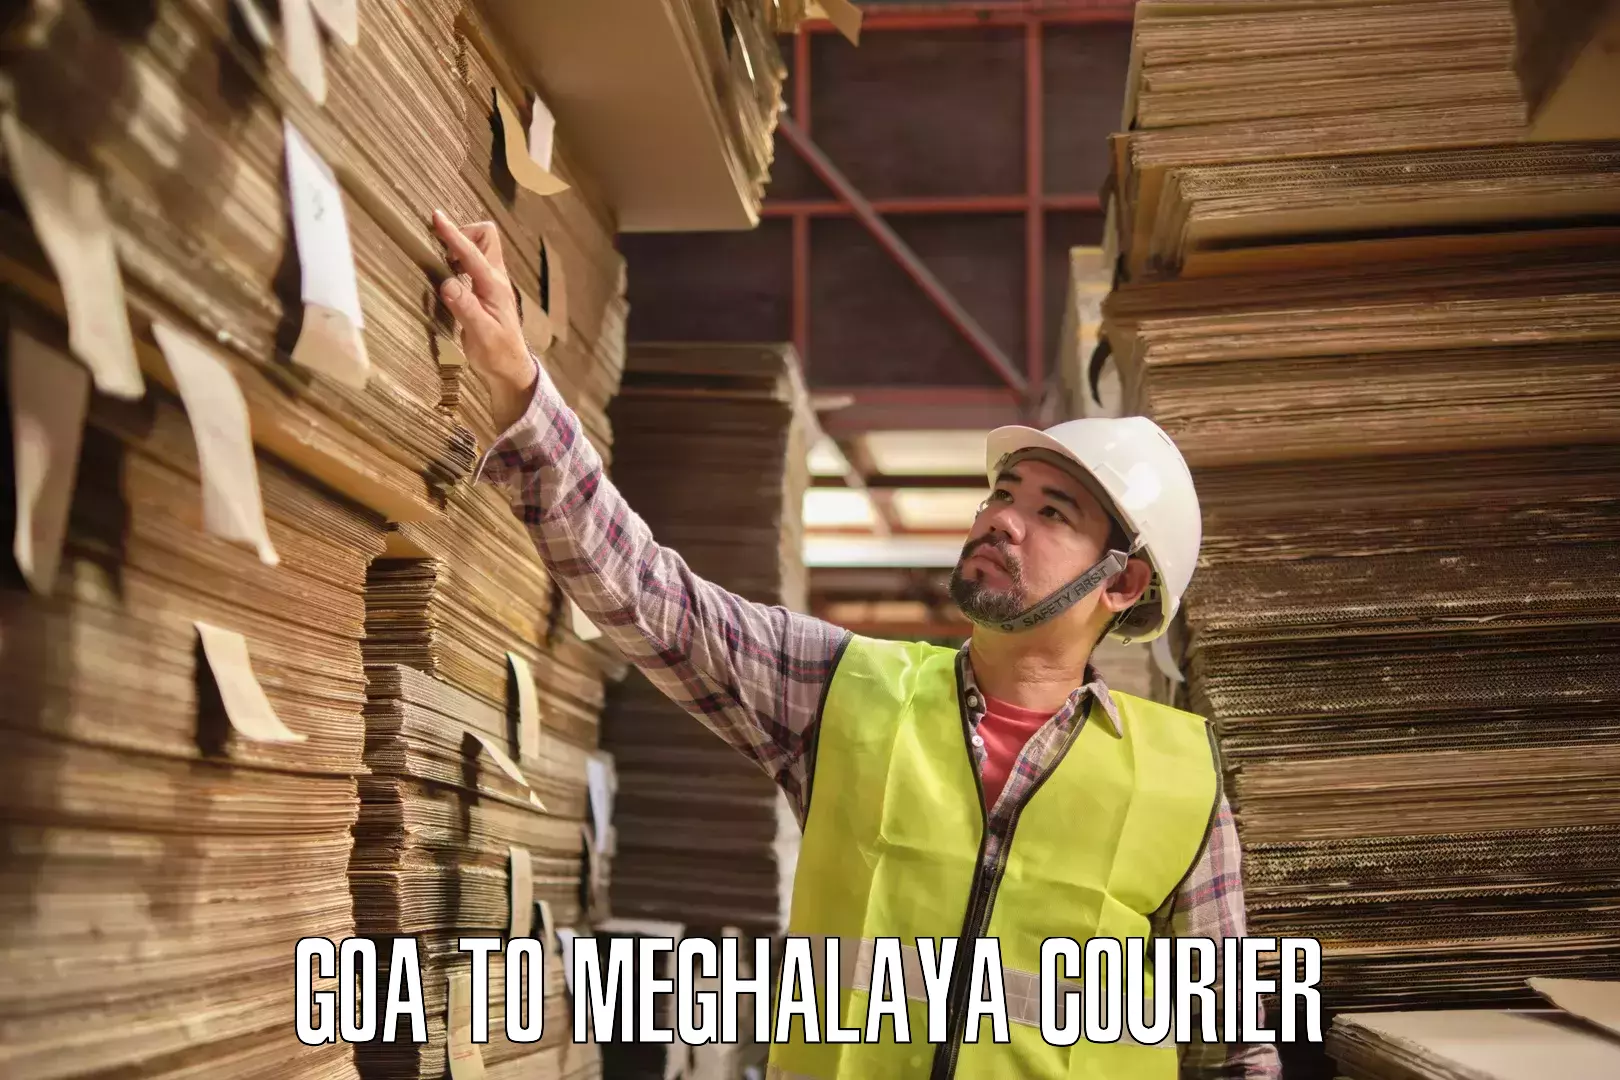 Multi-city courier Goa to Shillong